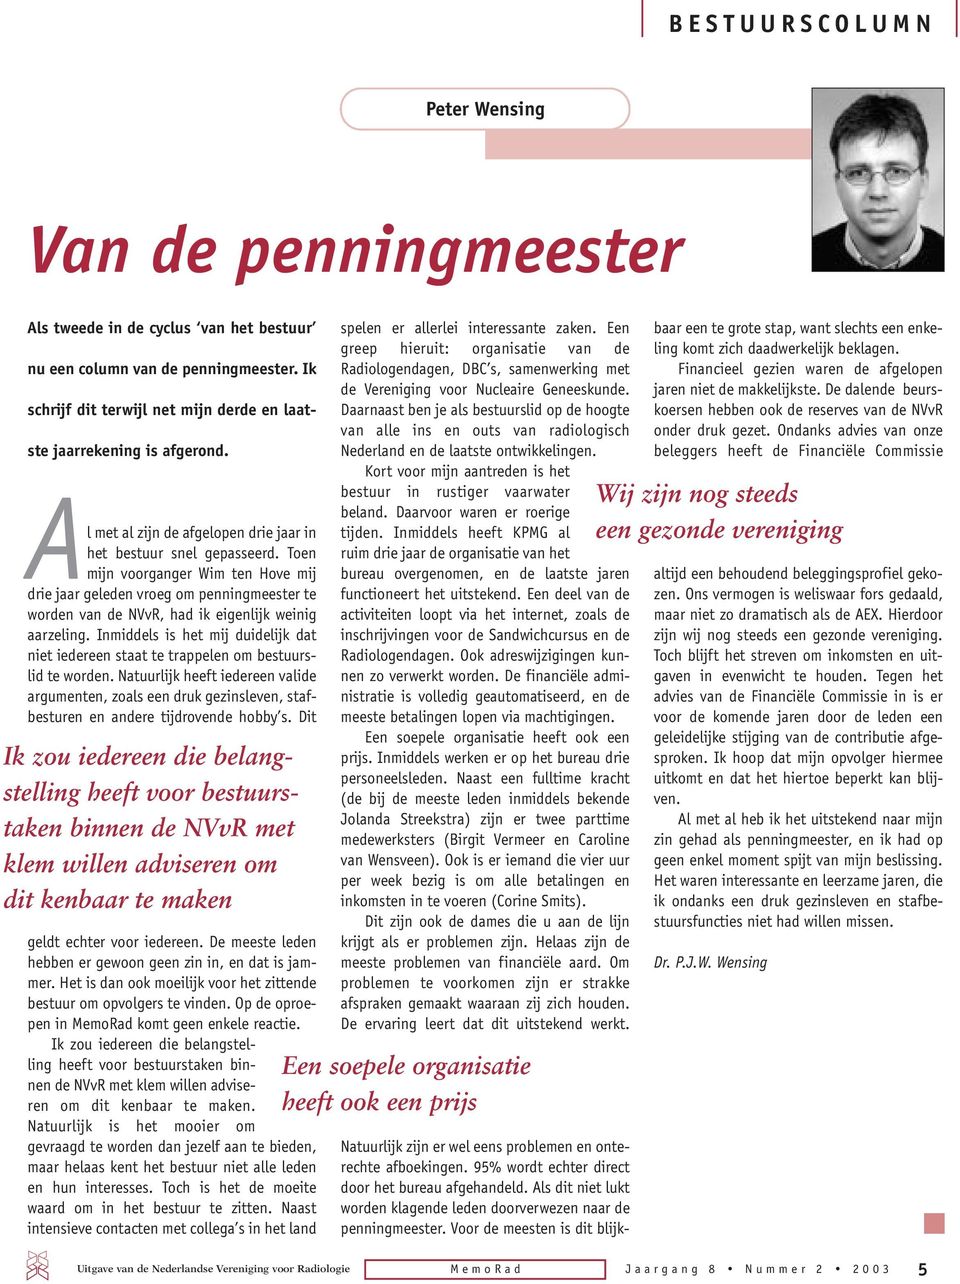 Toen mijn voorganger Wim ten Hove mij drie jaar geleden vroeg om penningmeester te worden van de NVvR, had ik eigenlijk weinig aarzeling.